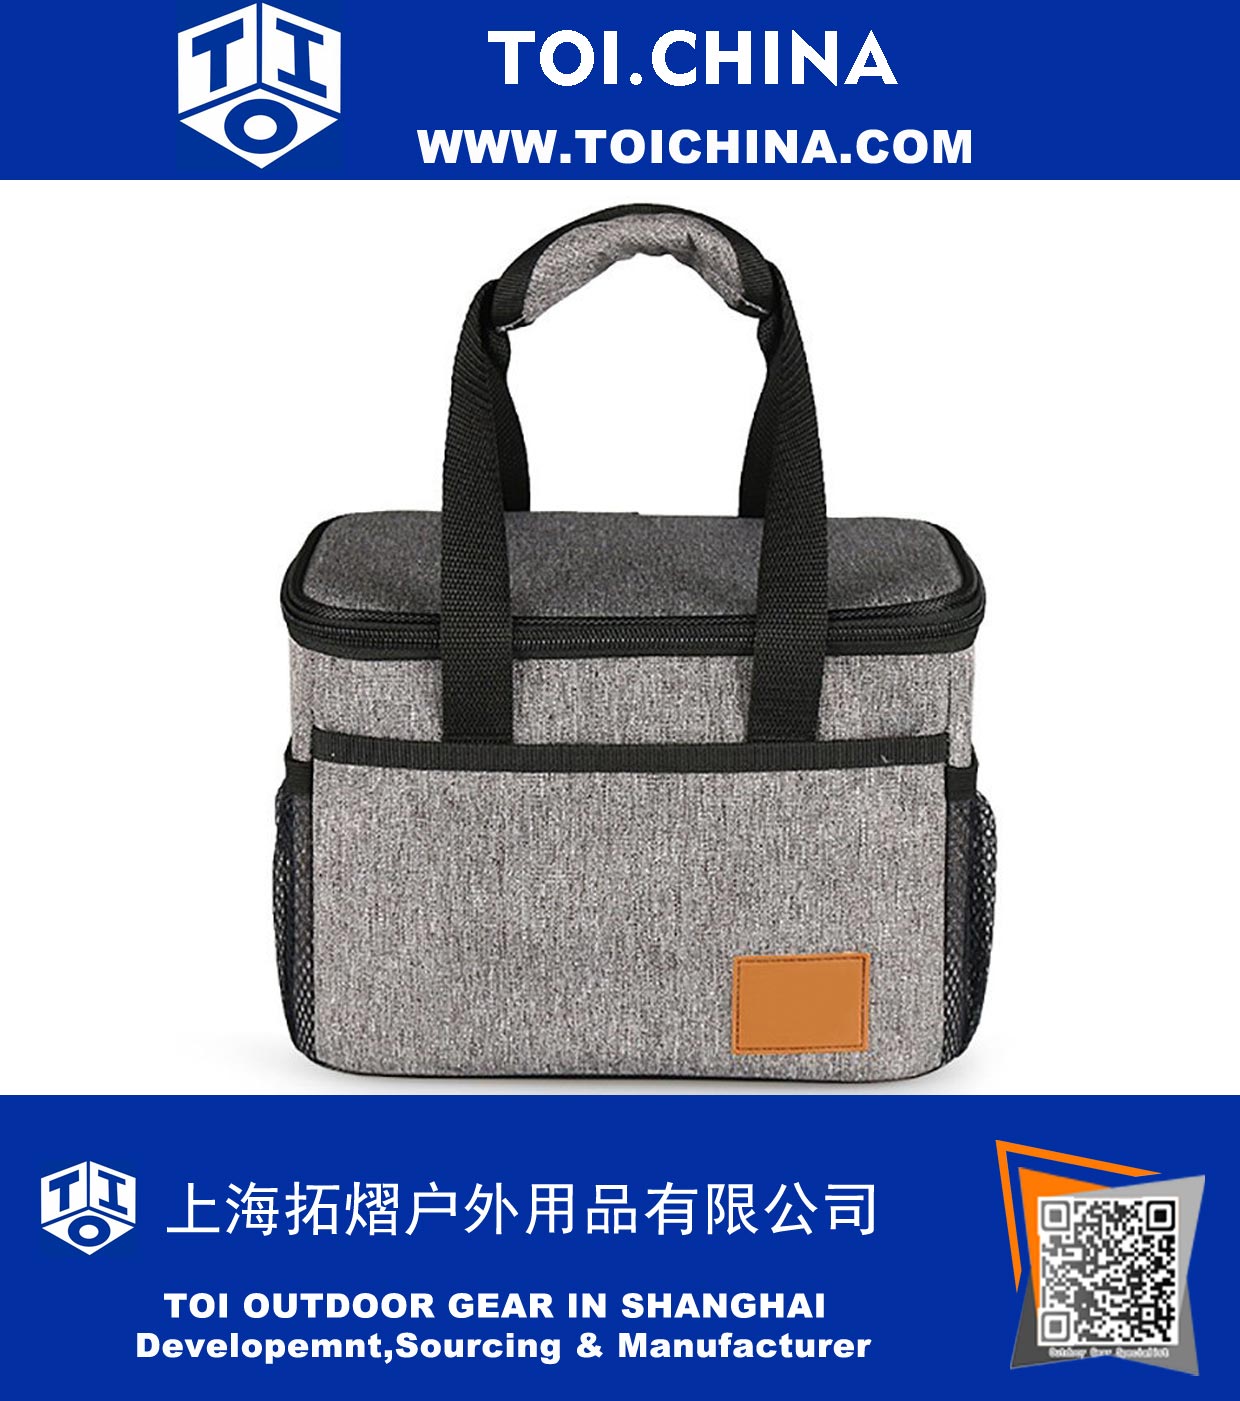 Ice Pack Portable Coolers Bag - Matière souple isolante imperméable à l'eau Organisateur Gris chiné Fourre-tout 6L